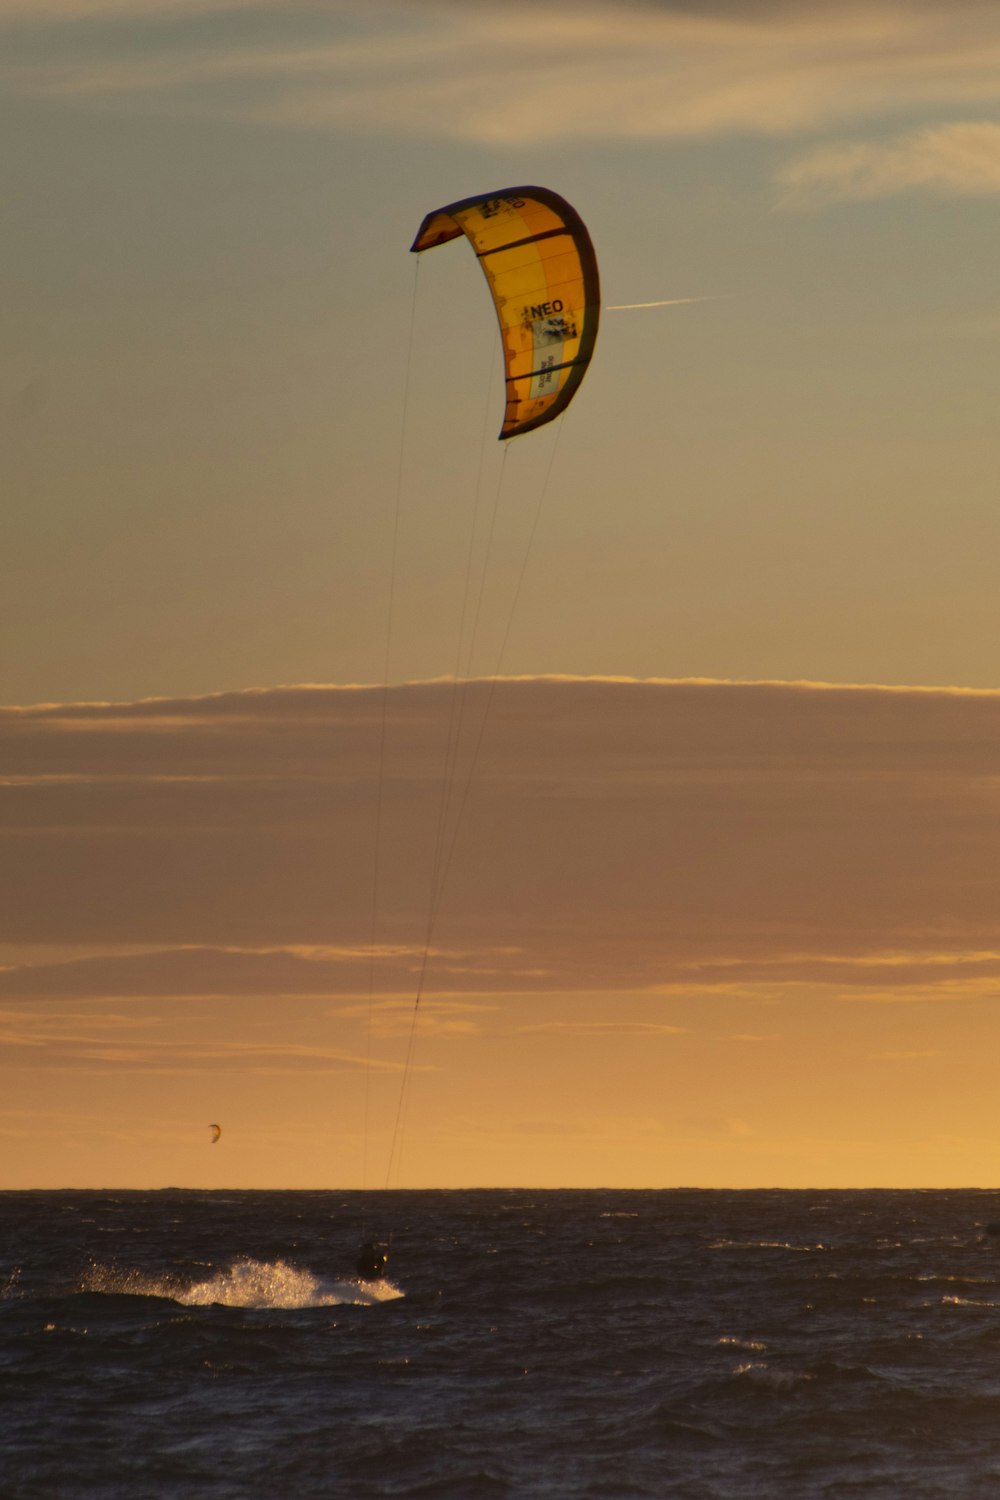 une personne parachute ascensionnel sur l’océan